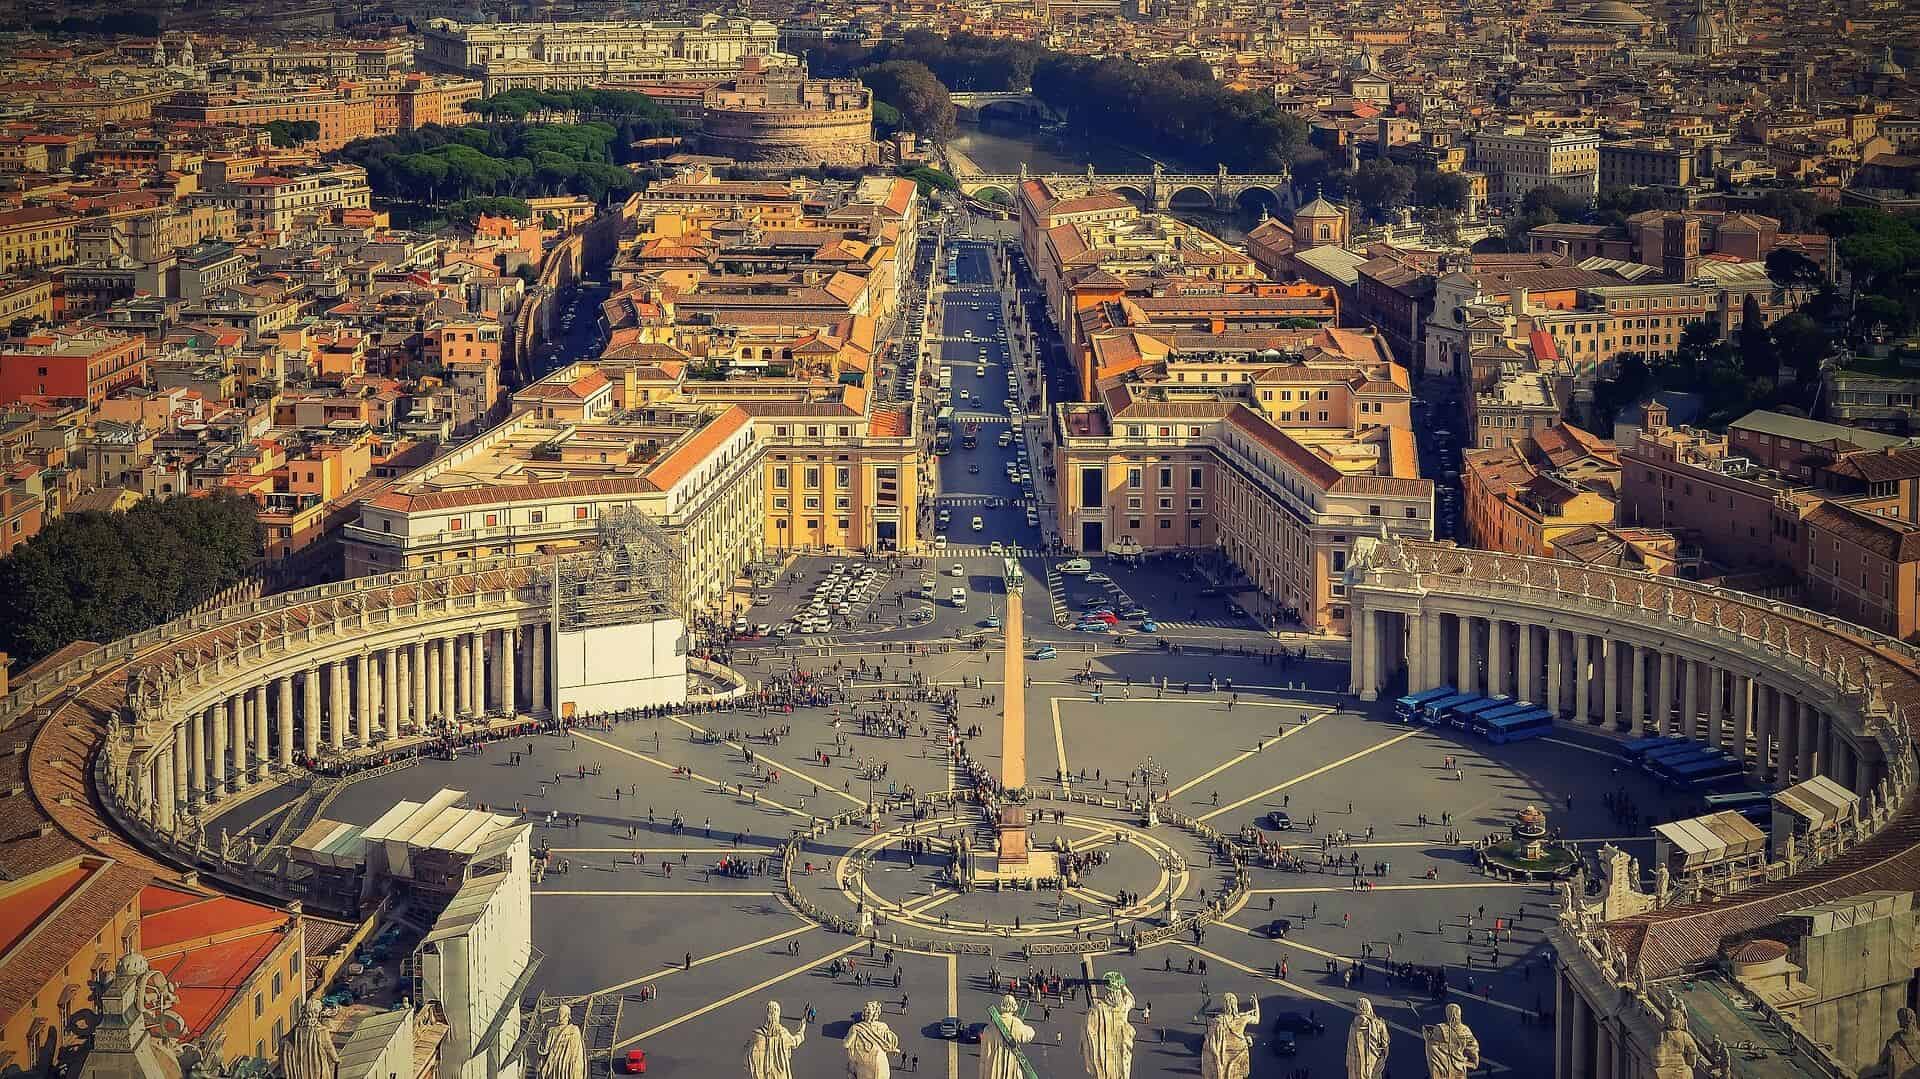 Všetky cesty vedú do Ríma - rome 1945033 1920 - Všetky cesty vedú do Ríma